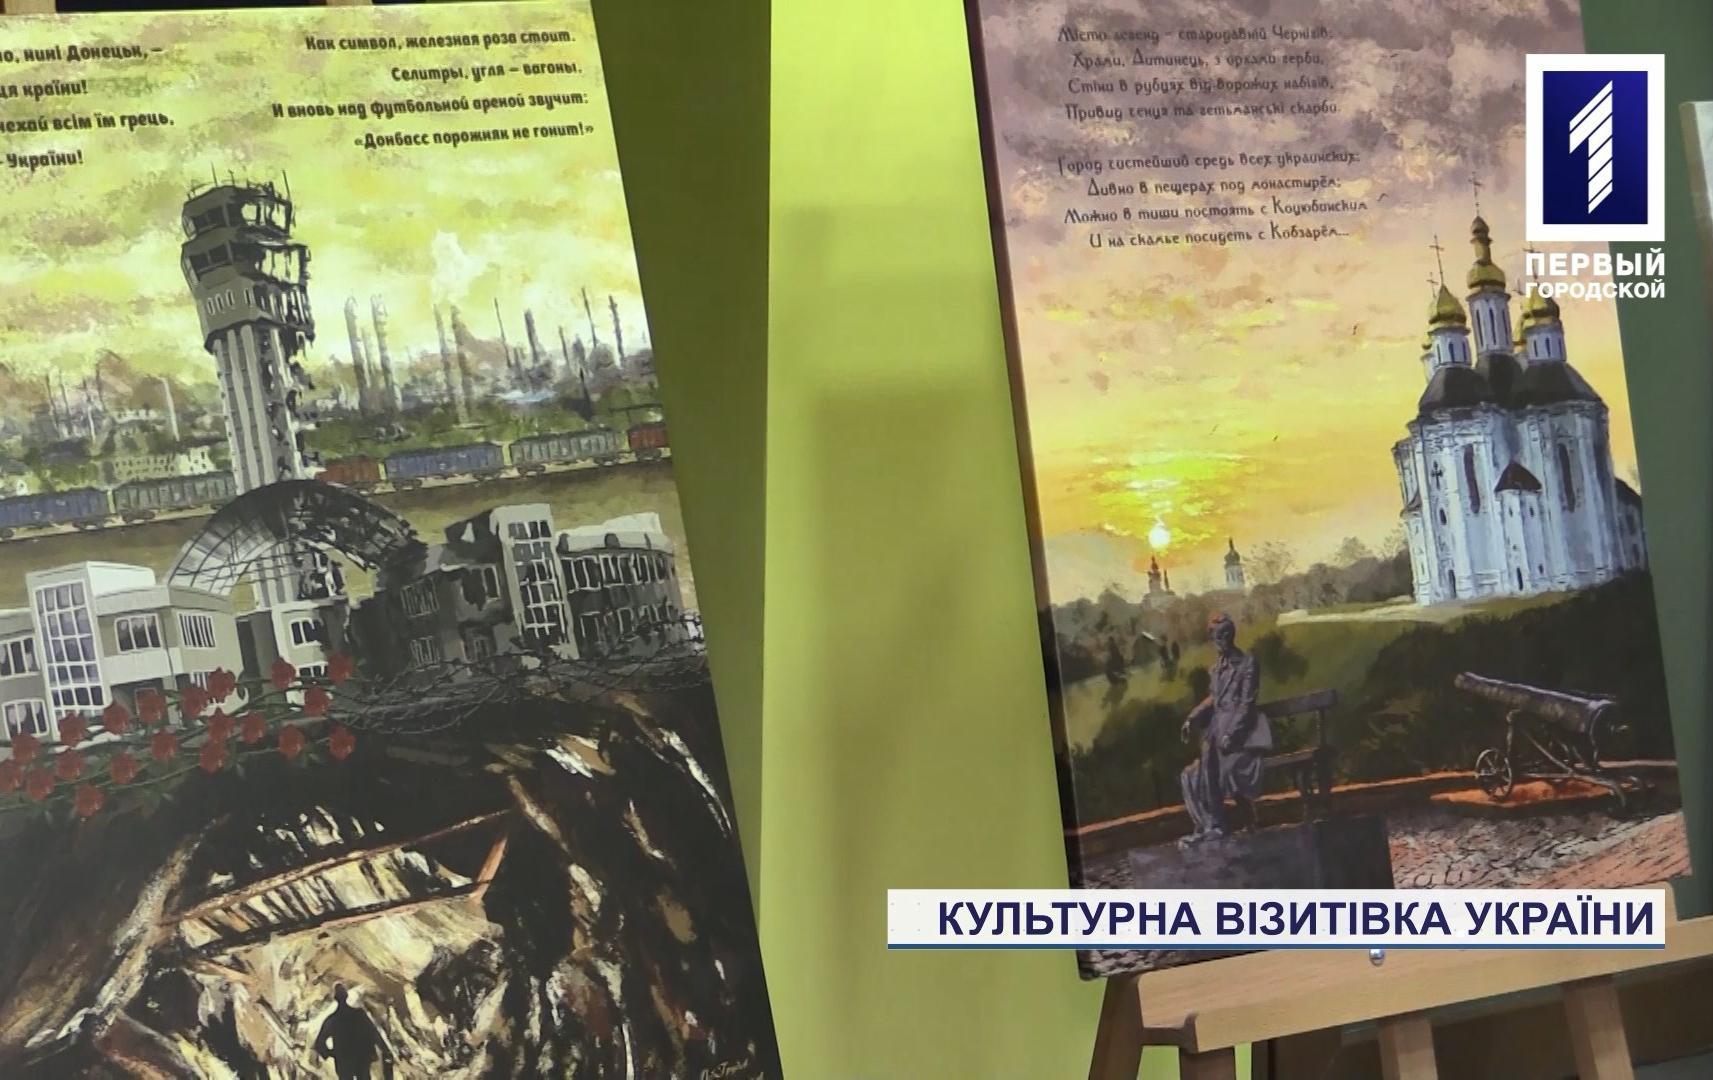 Выставка «Культурная визитная карточка Украины» открылась в Кривом Роге